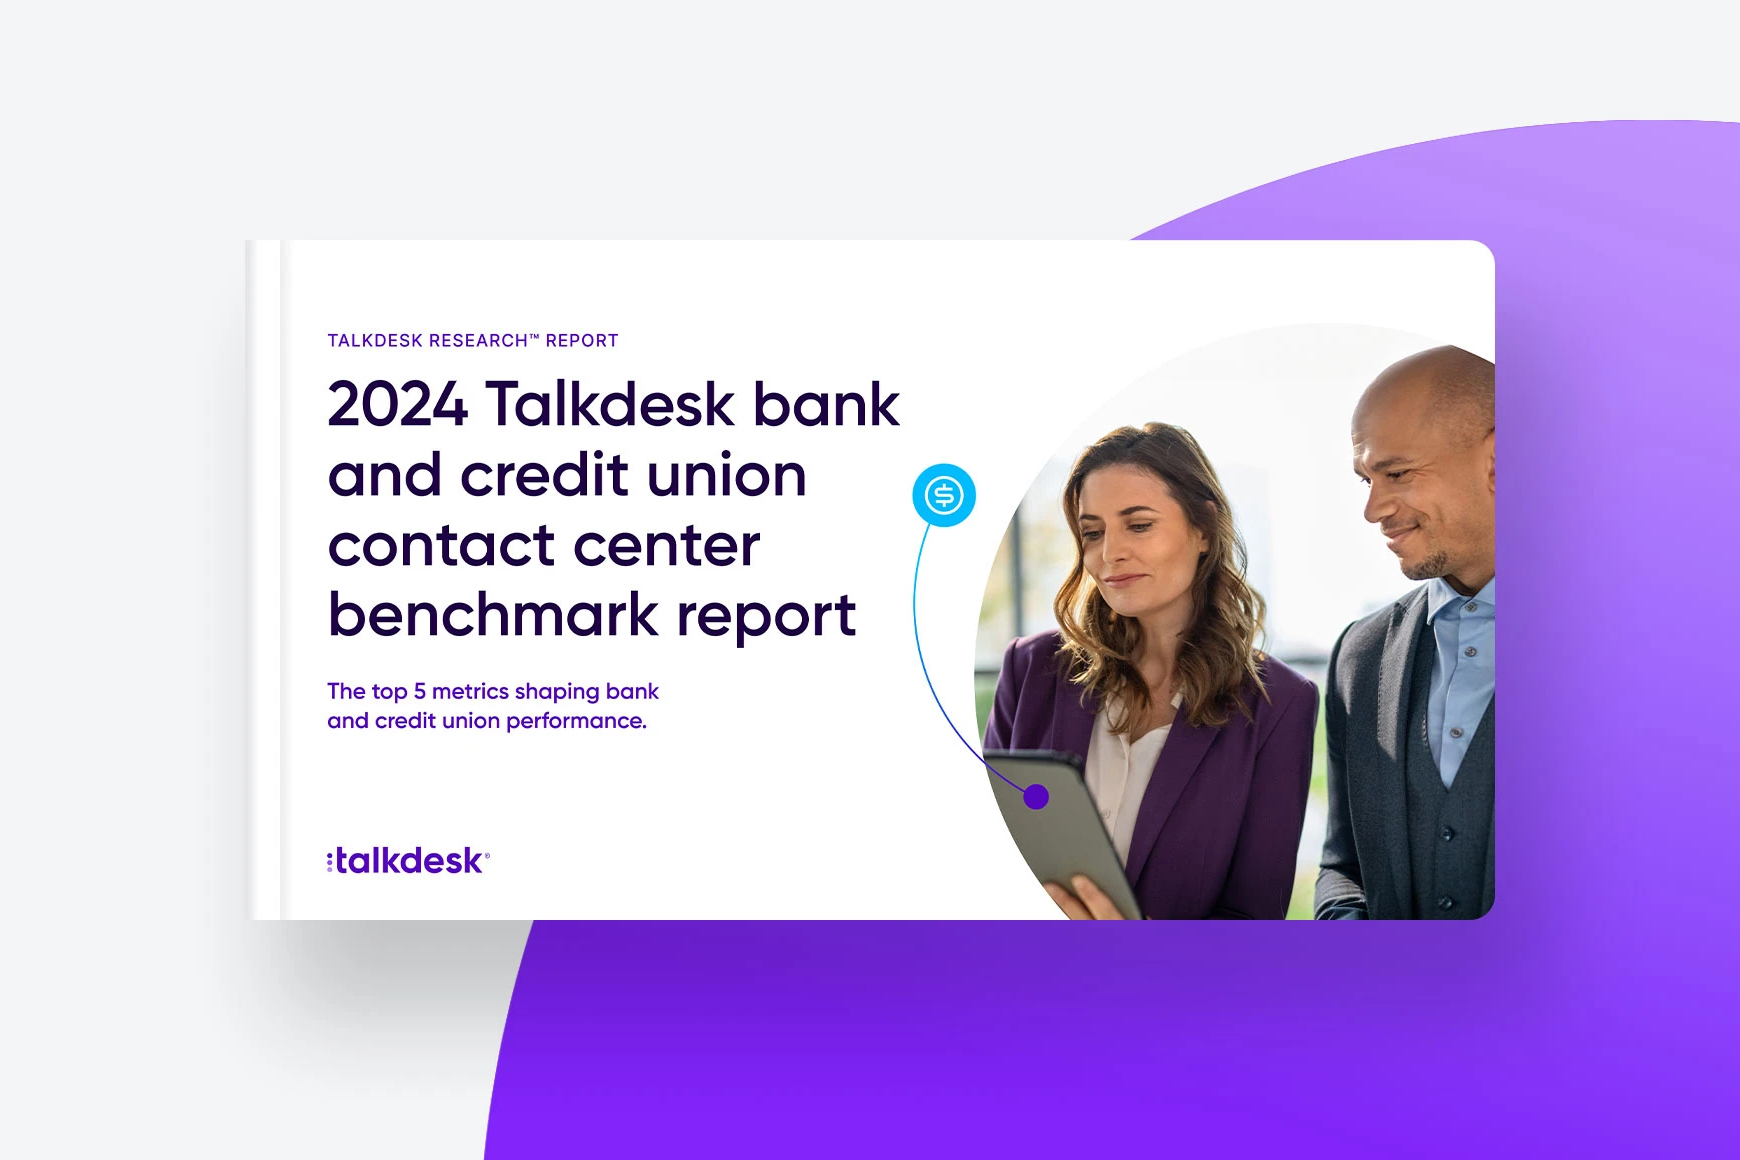 Rapport de Benchmark de Talkdesk pour les centres de contact de banques et de coopératives de crédit en 2024